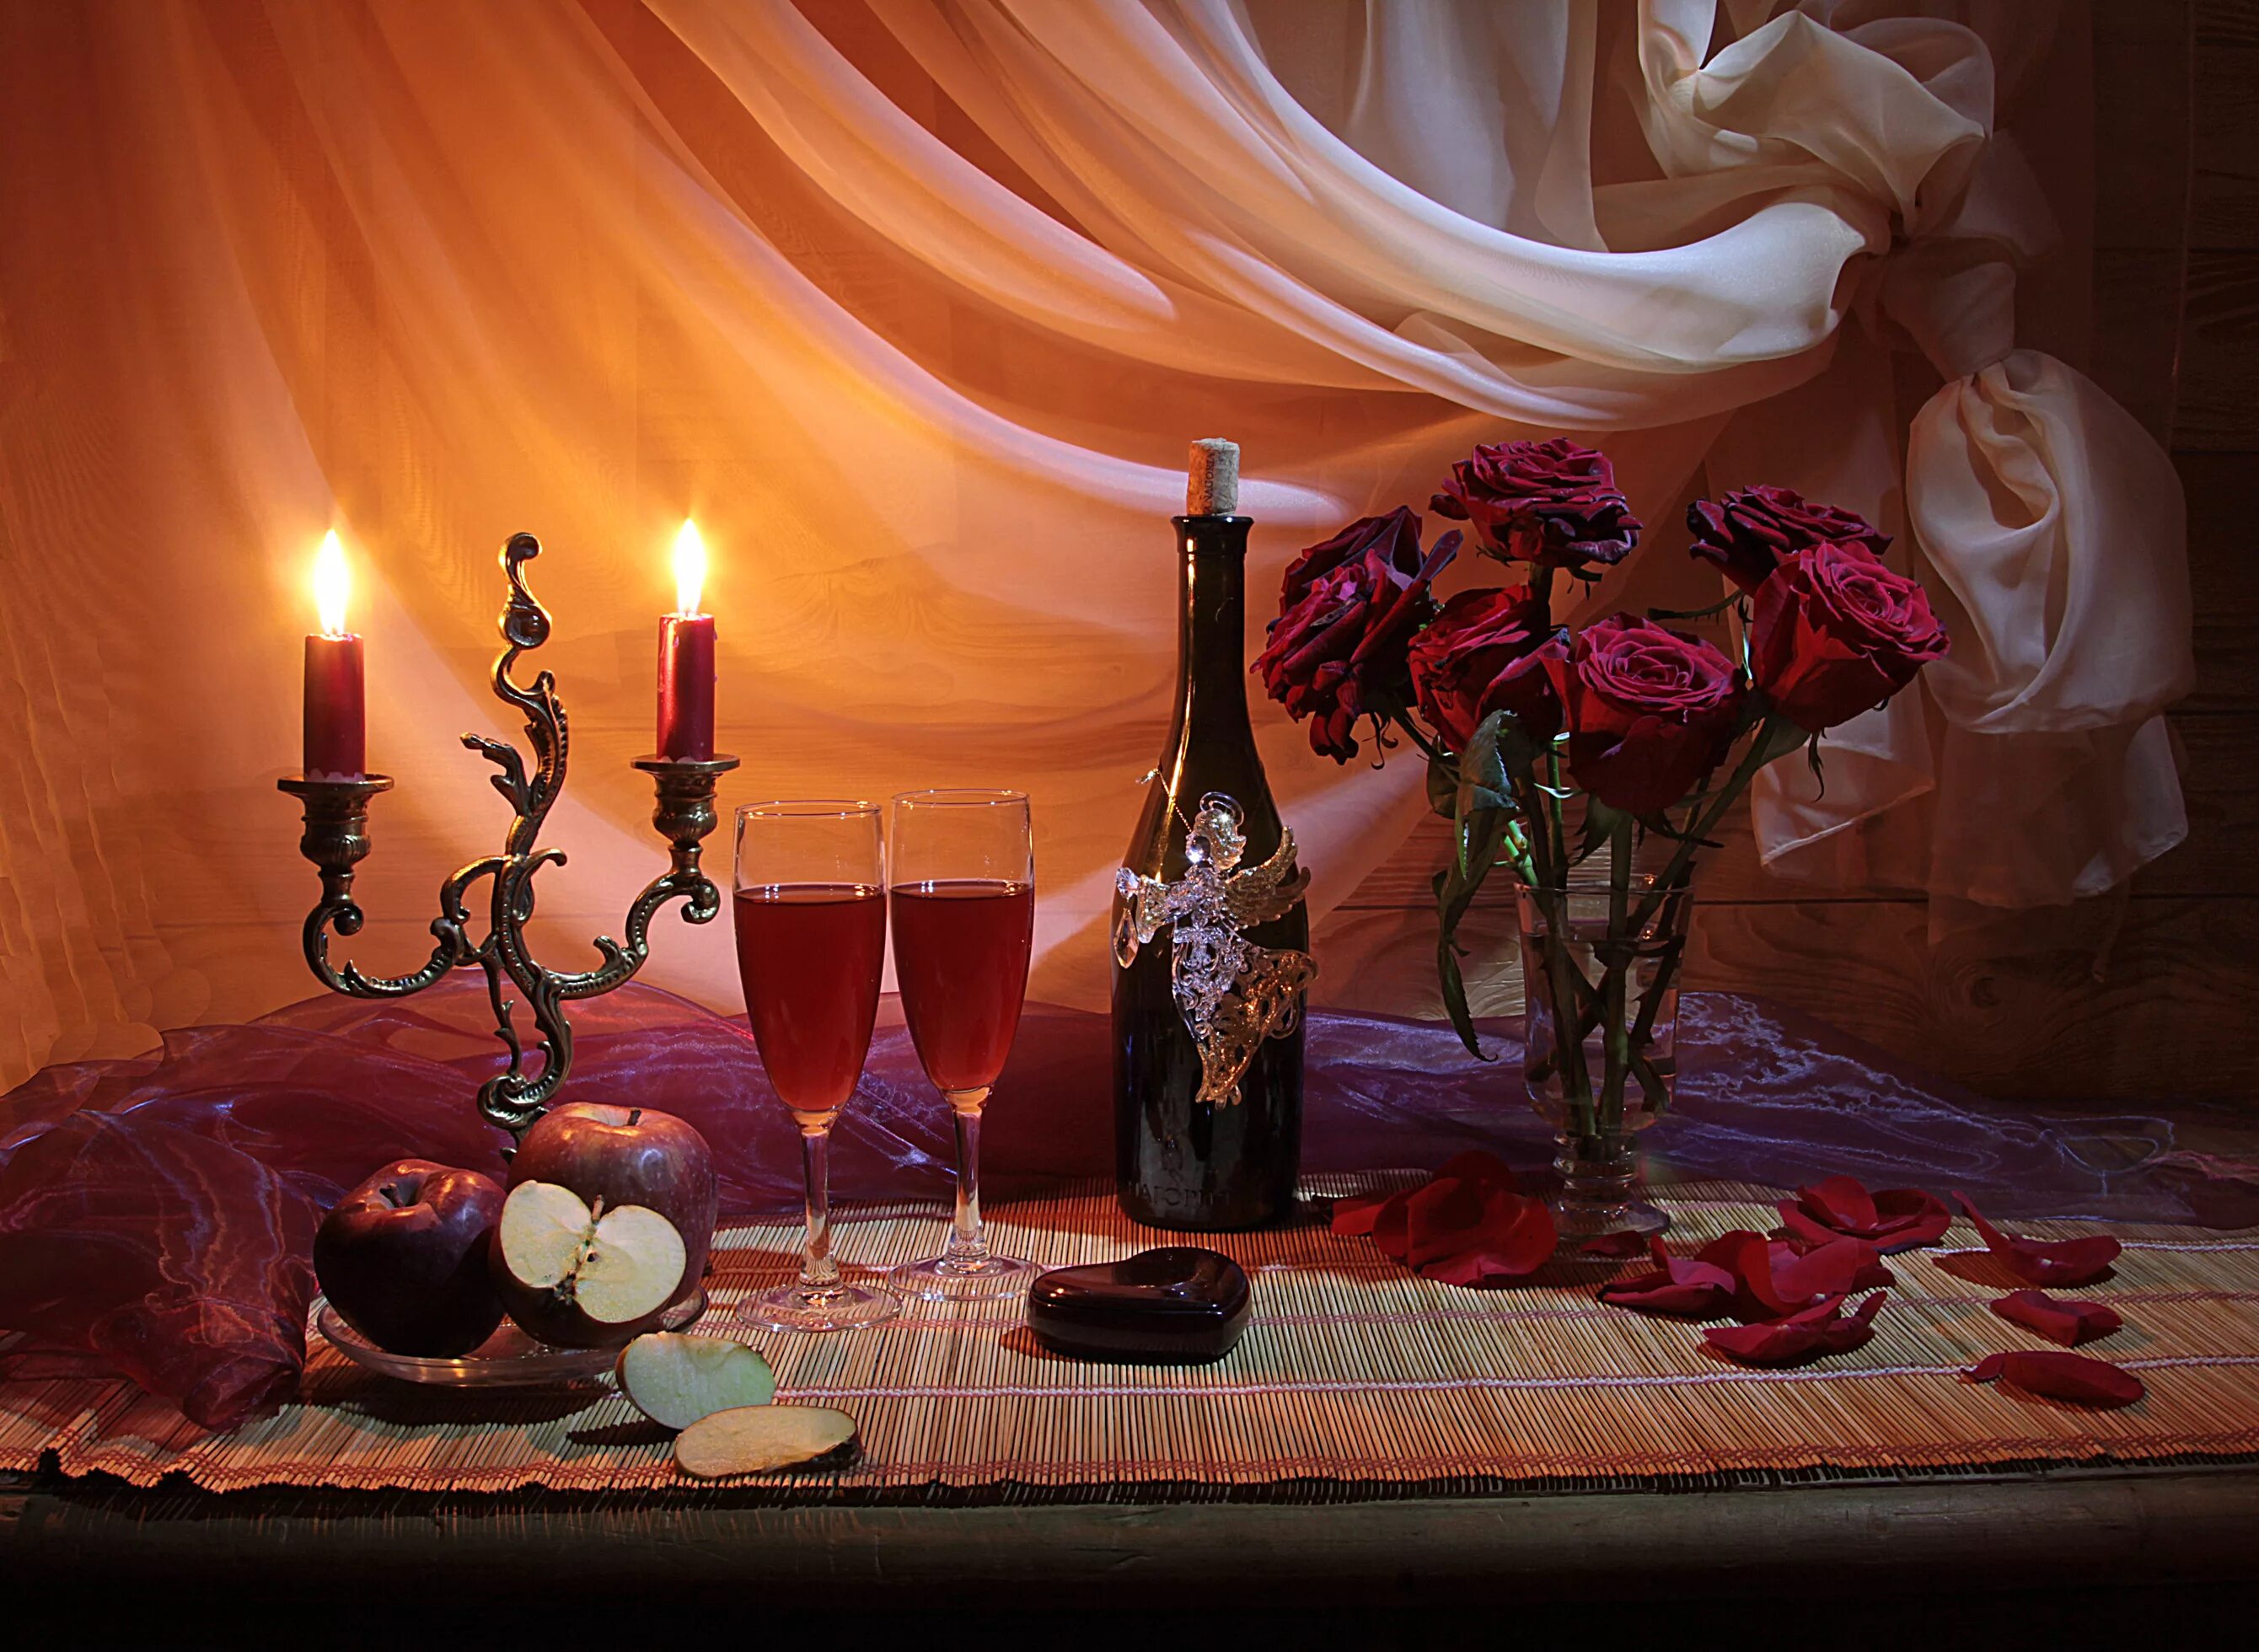 Начало юбилея как начать вечер. Вино и свечи. Свеча вино цветы. Романтичный натюрморт. Вечер вино свечи.